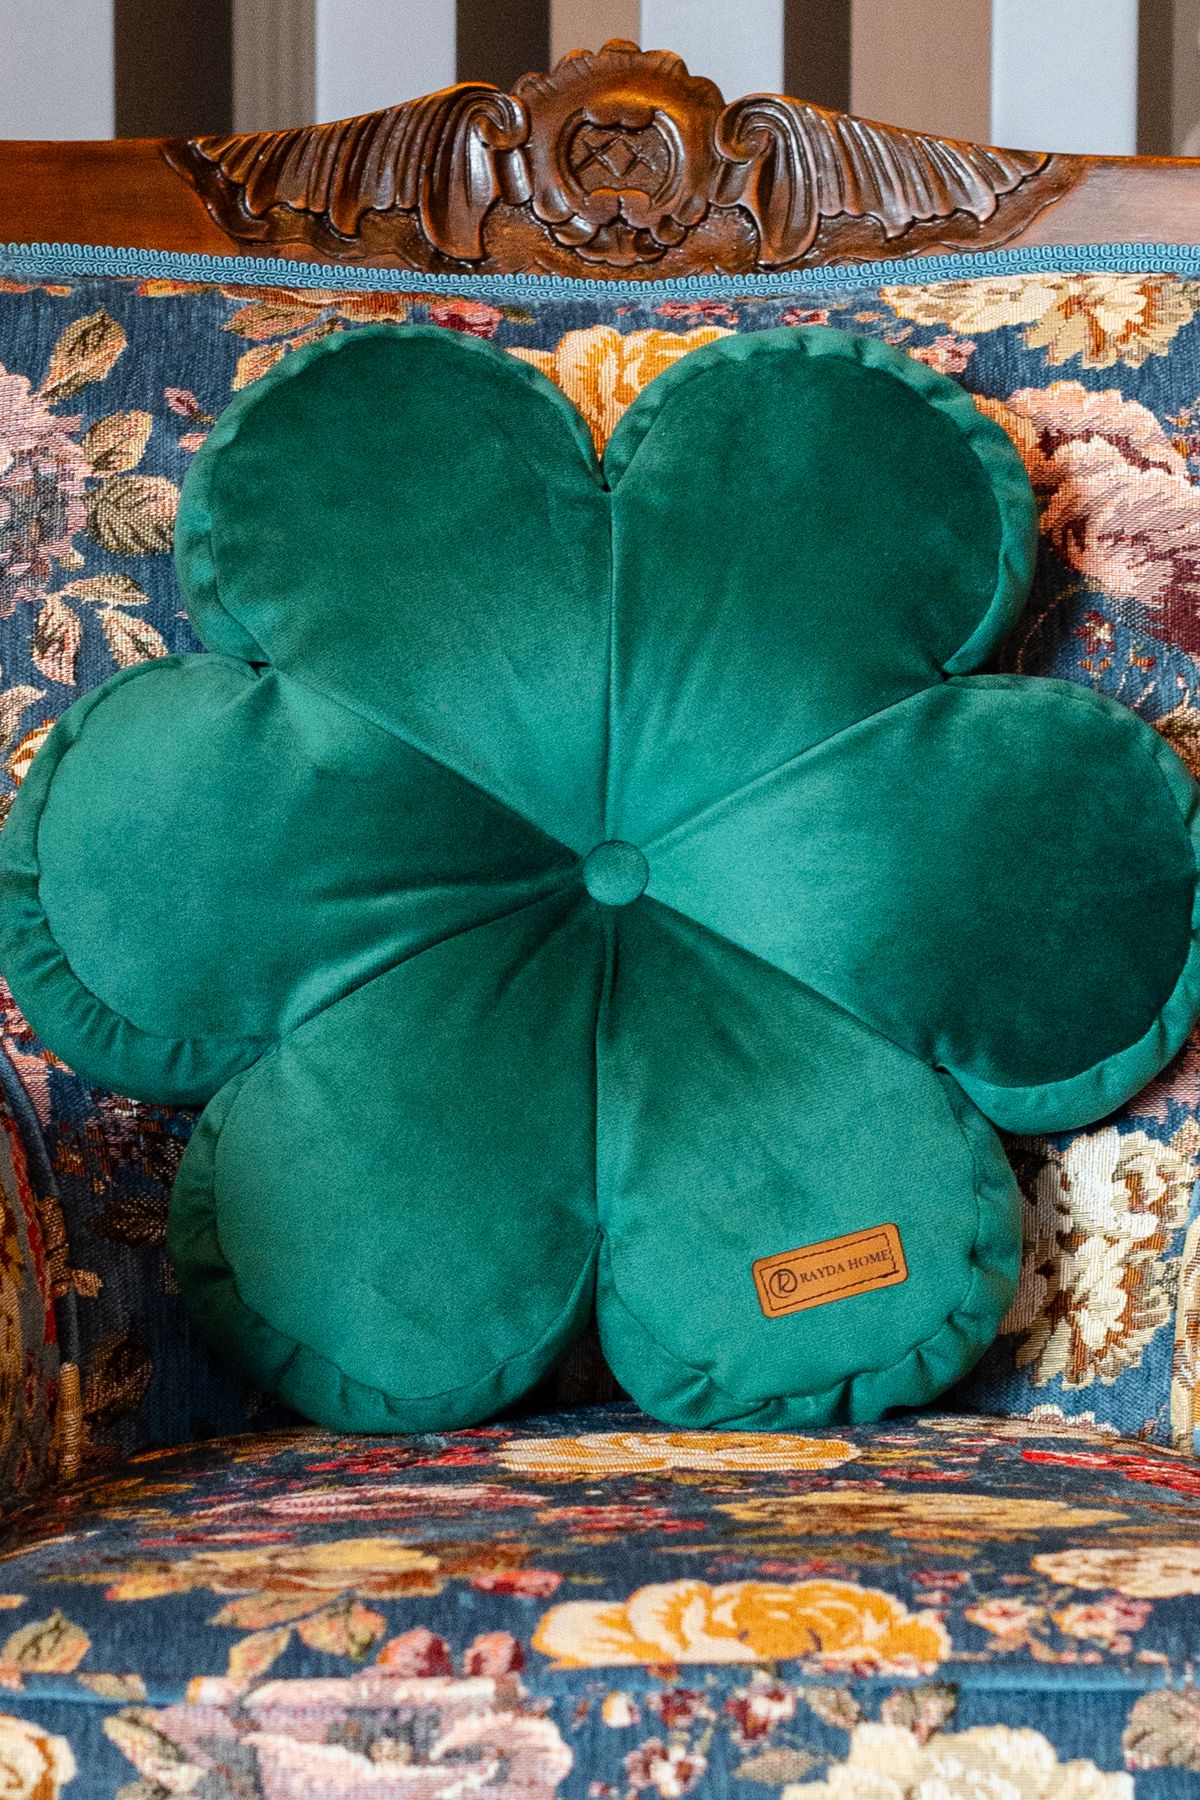 Rayda Home Dekoratif Yeşil Renk İç Dolgulu Kırlent Çiçek Yastık 42*42 Cm